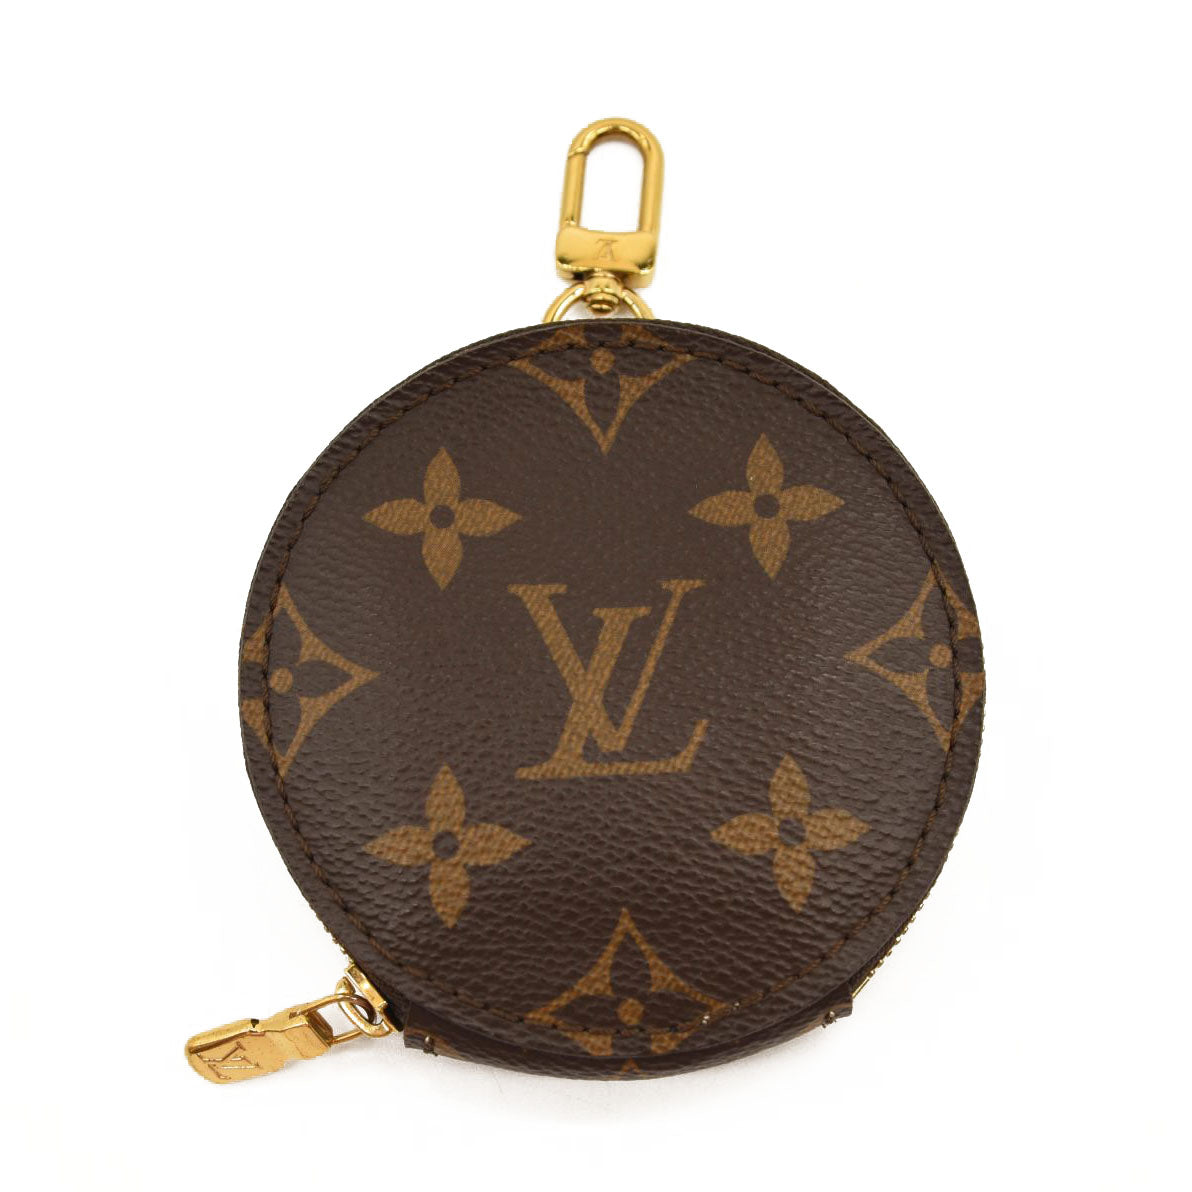 Louis Vuitton Neverfull Bb